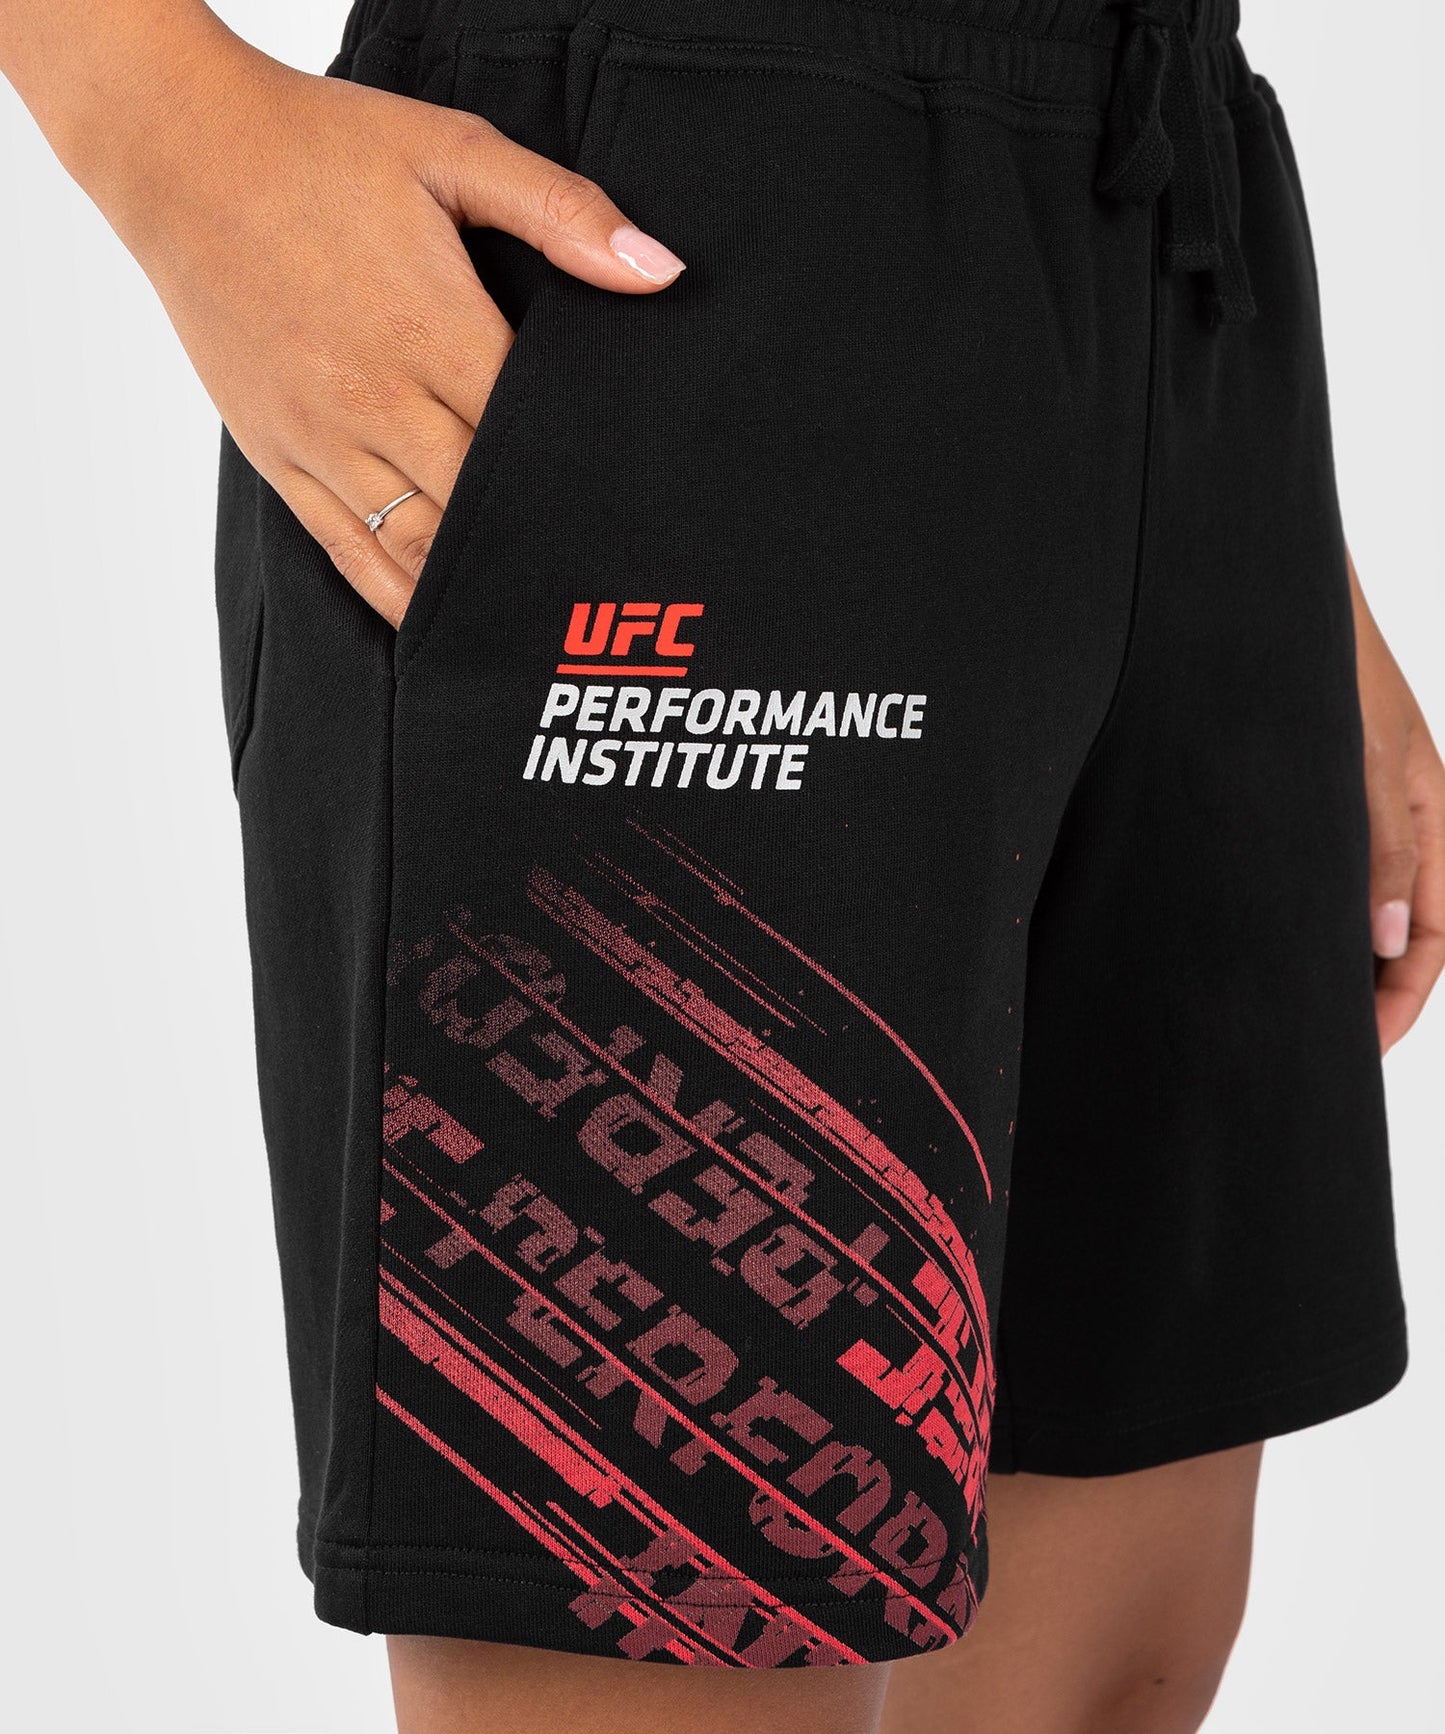 UFC Venum Performance Institute 2.0 Performance Short für Frauen - Schwarz/Rot